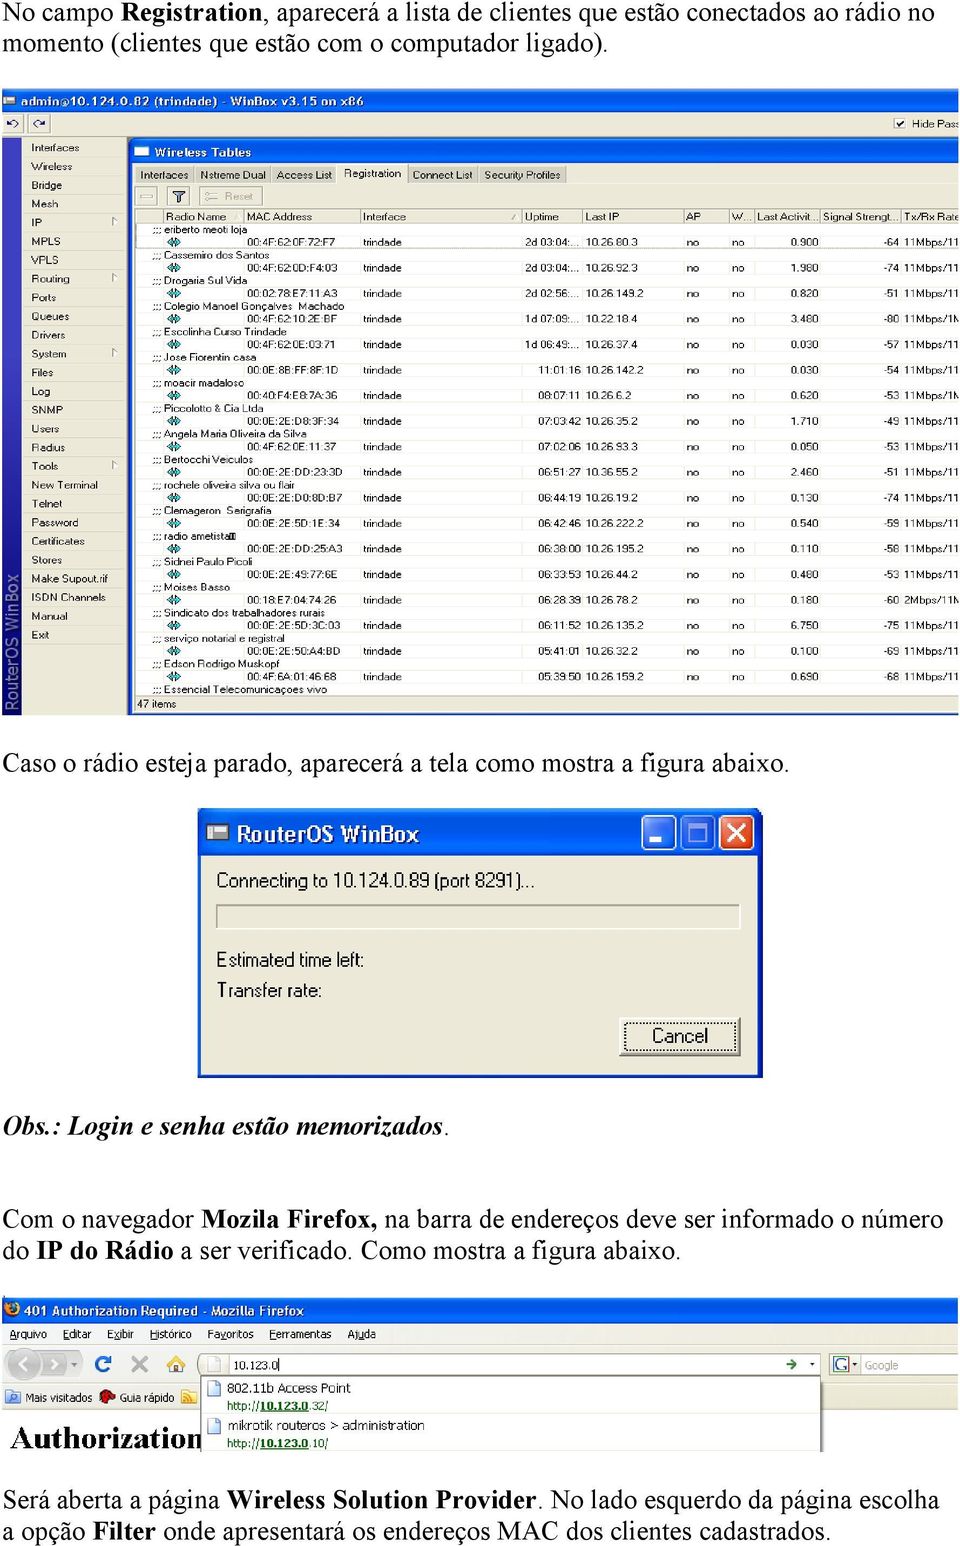 Com o navegador Mozila Firefox, na barra de endereços deve ser informado o número do IP do Rádio a ser verificado.